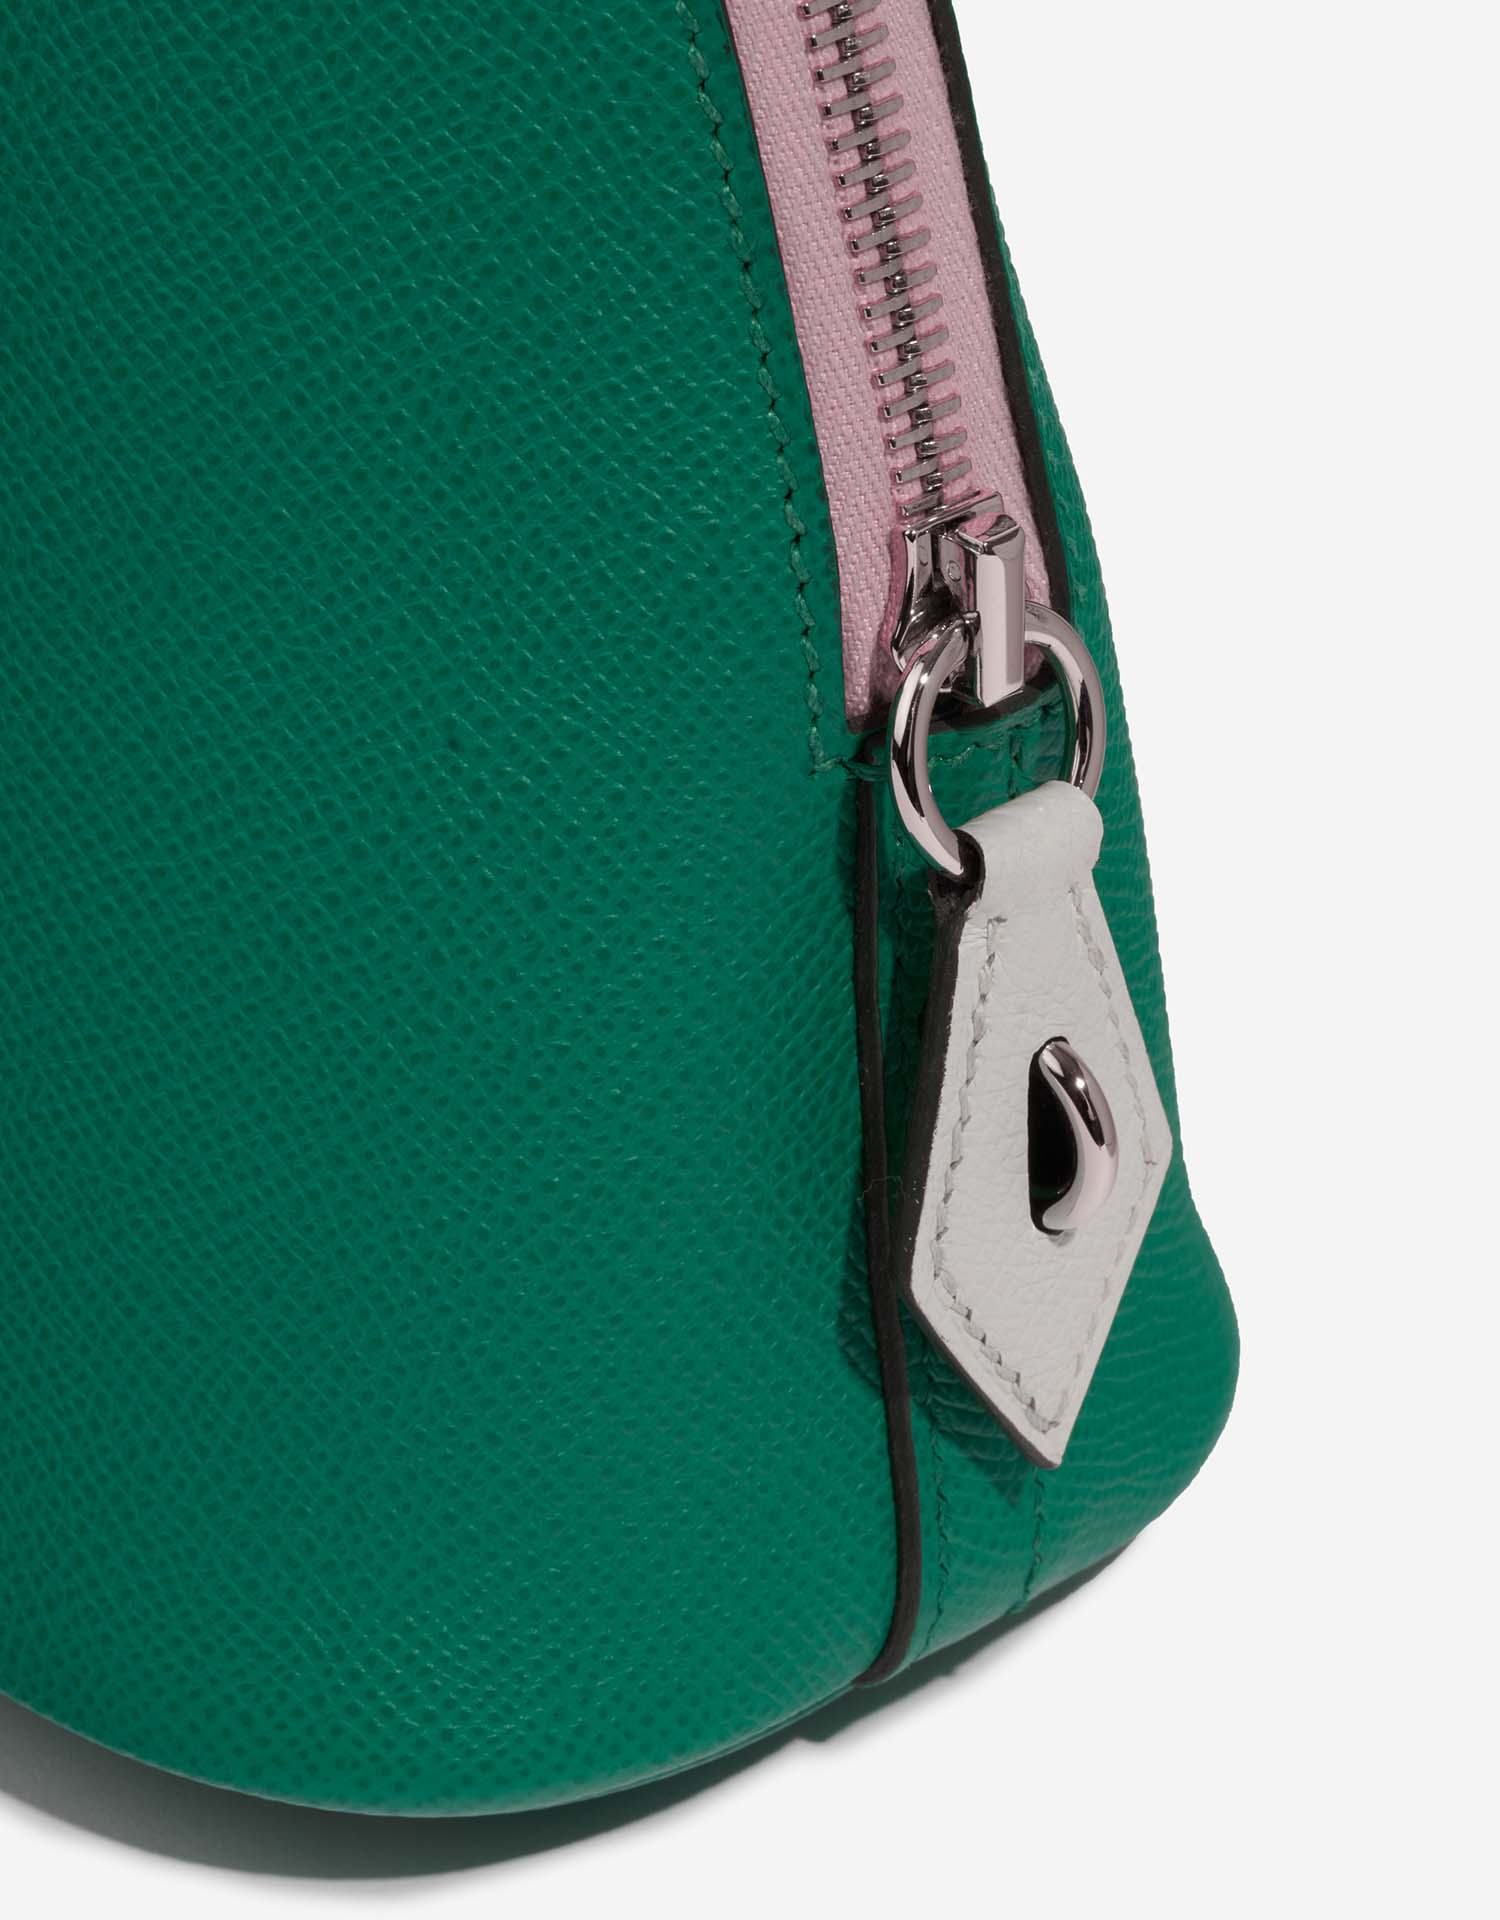 Hermès Bolide 27 VertJade-MauveSylvestre-Nata Closing System  | Sell your designer bag on Saclab.com